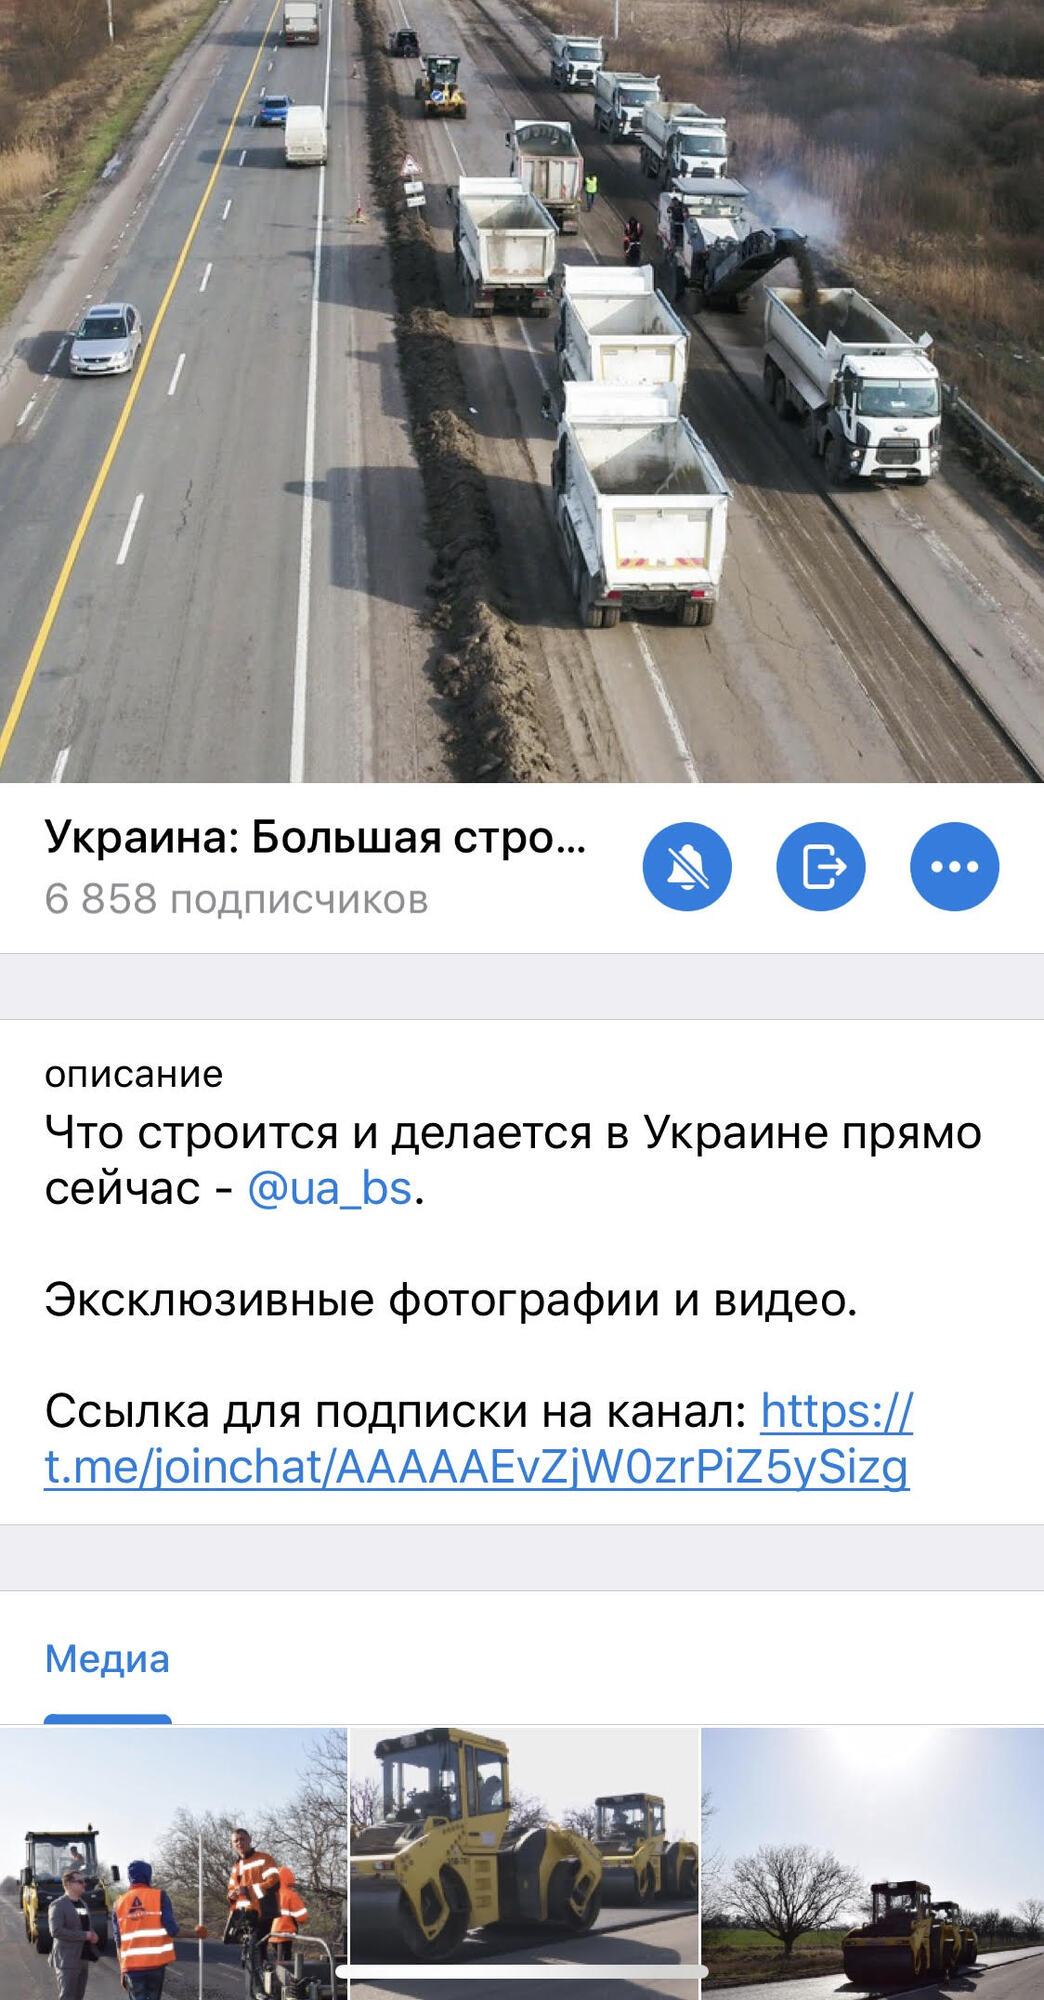 Голик заявил о запуске Telegram-канала о "Большой стройке" в Украине